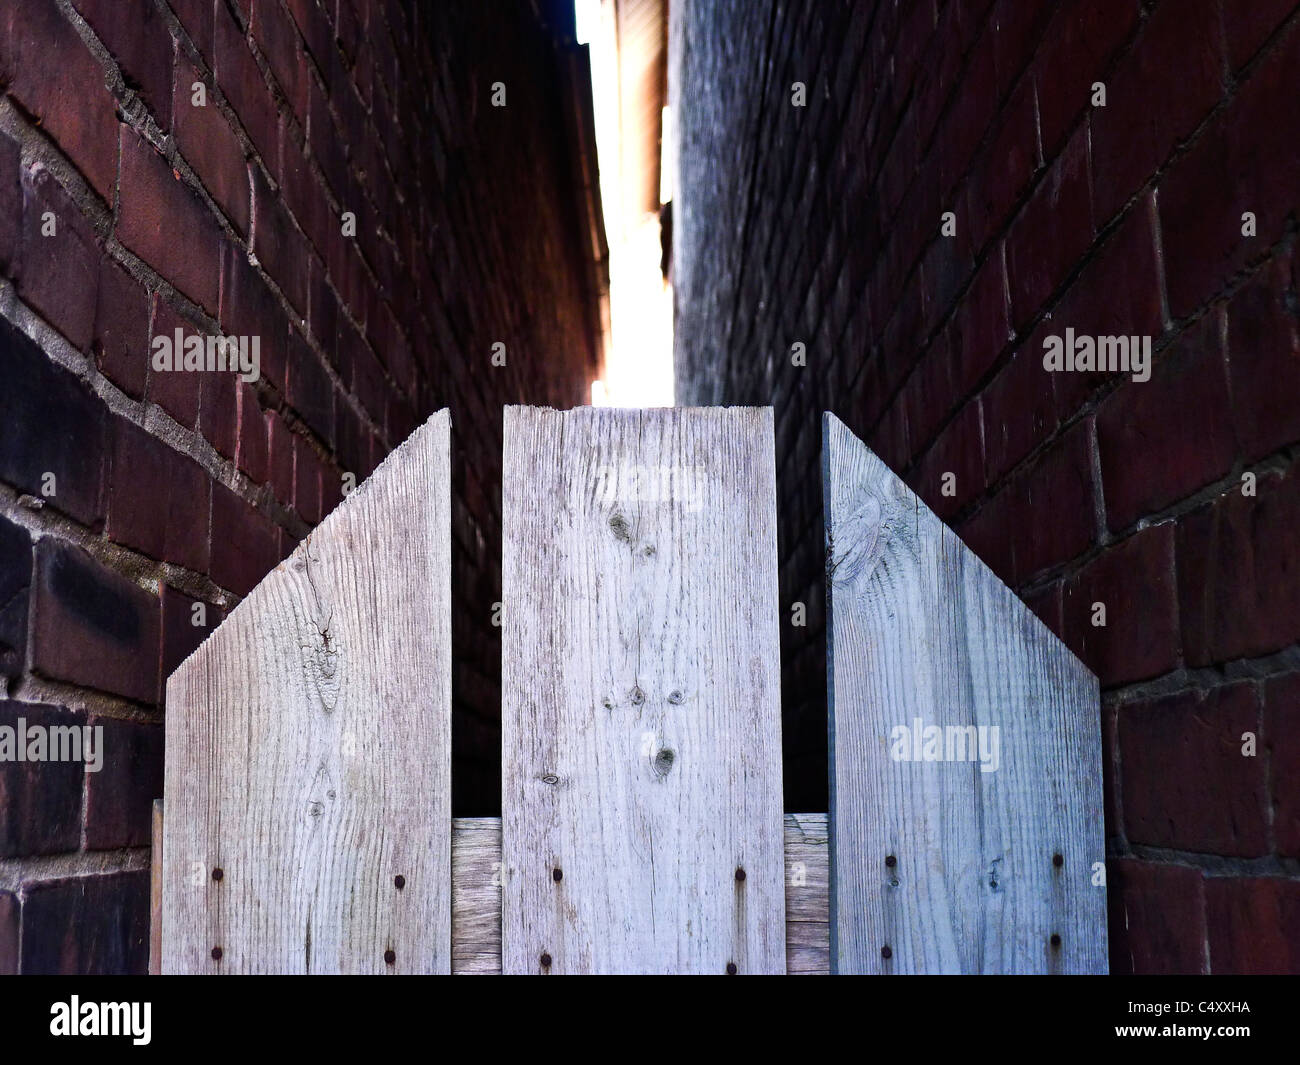 Staccionata in legno la divisione di due muri di mattoni. Foto Stock